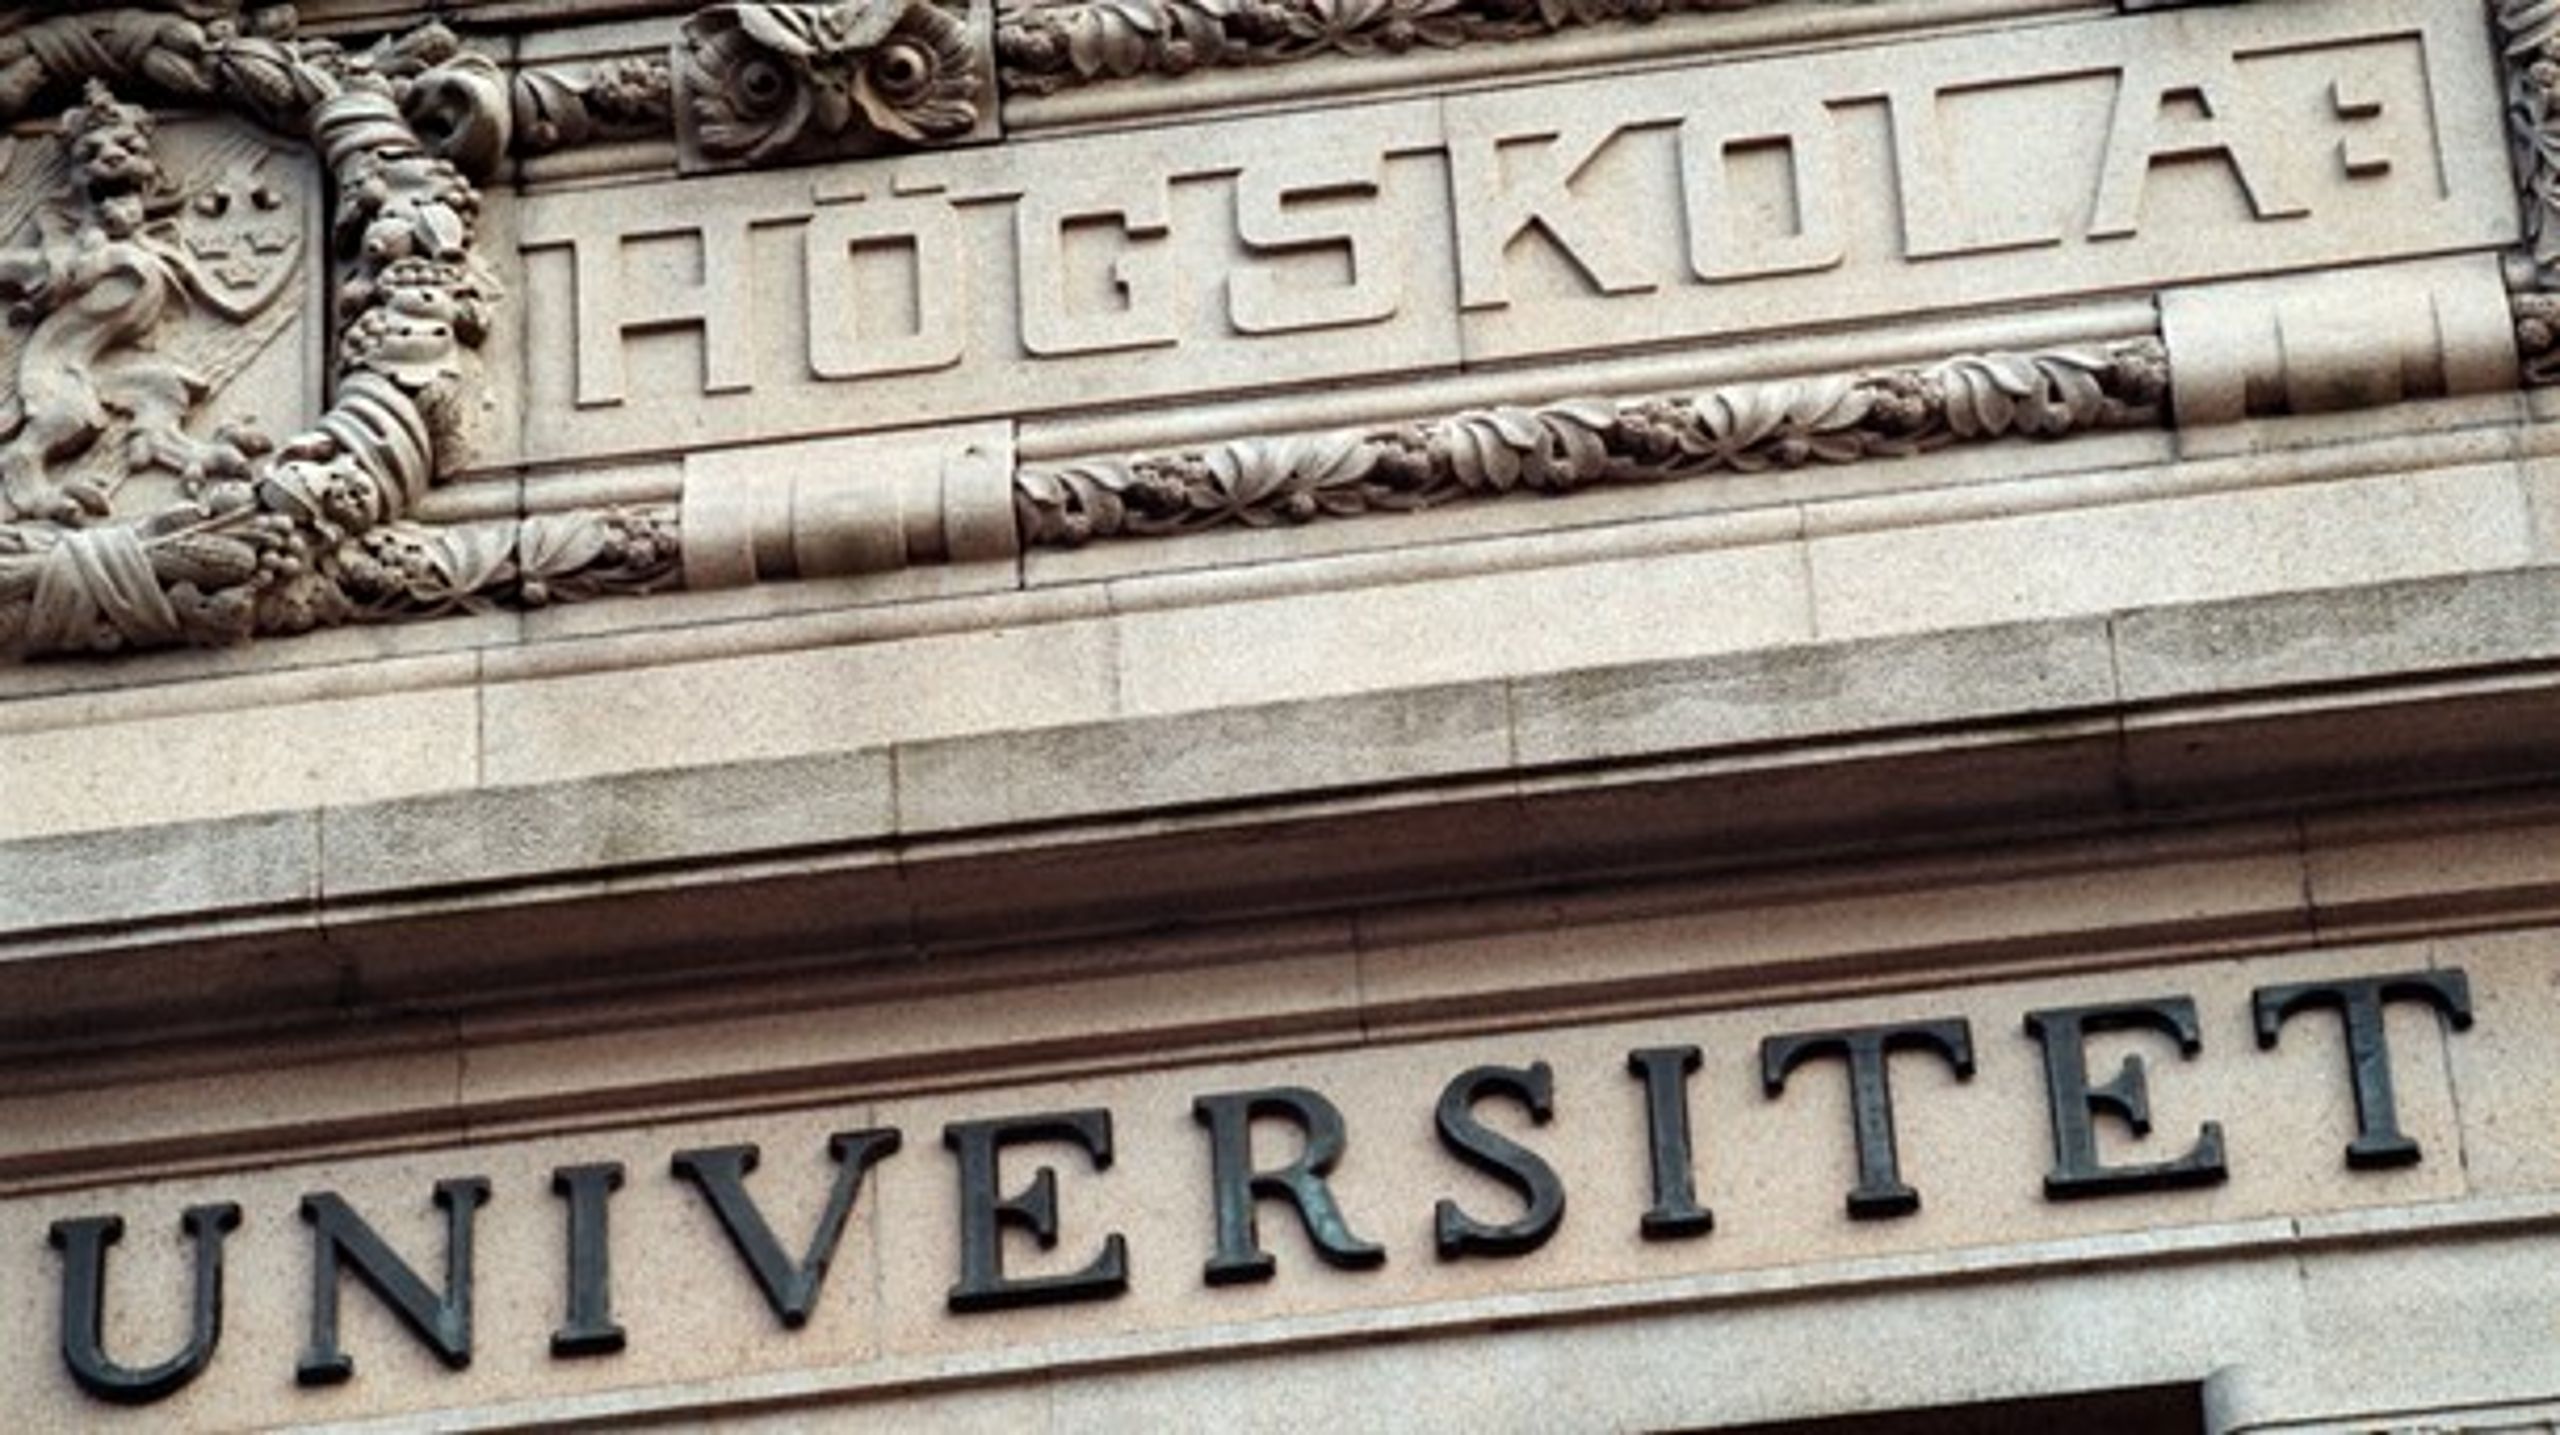 7 av 12 ämneslärarutbildningar vid Göteborgs universitet har ifrågasatt kvalitet.